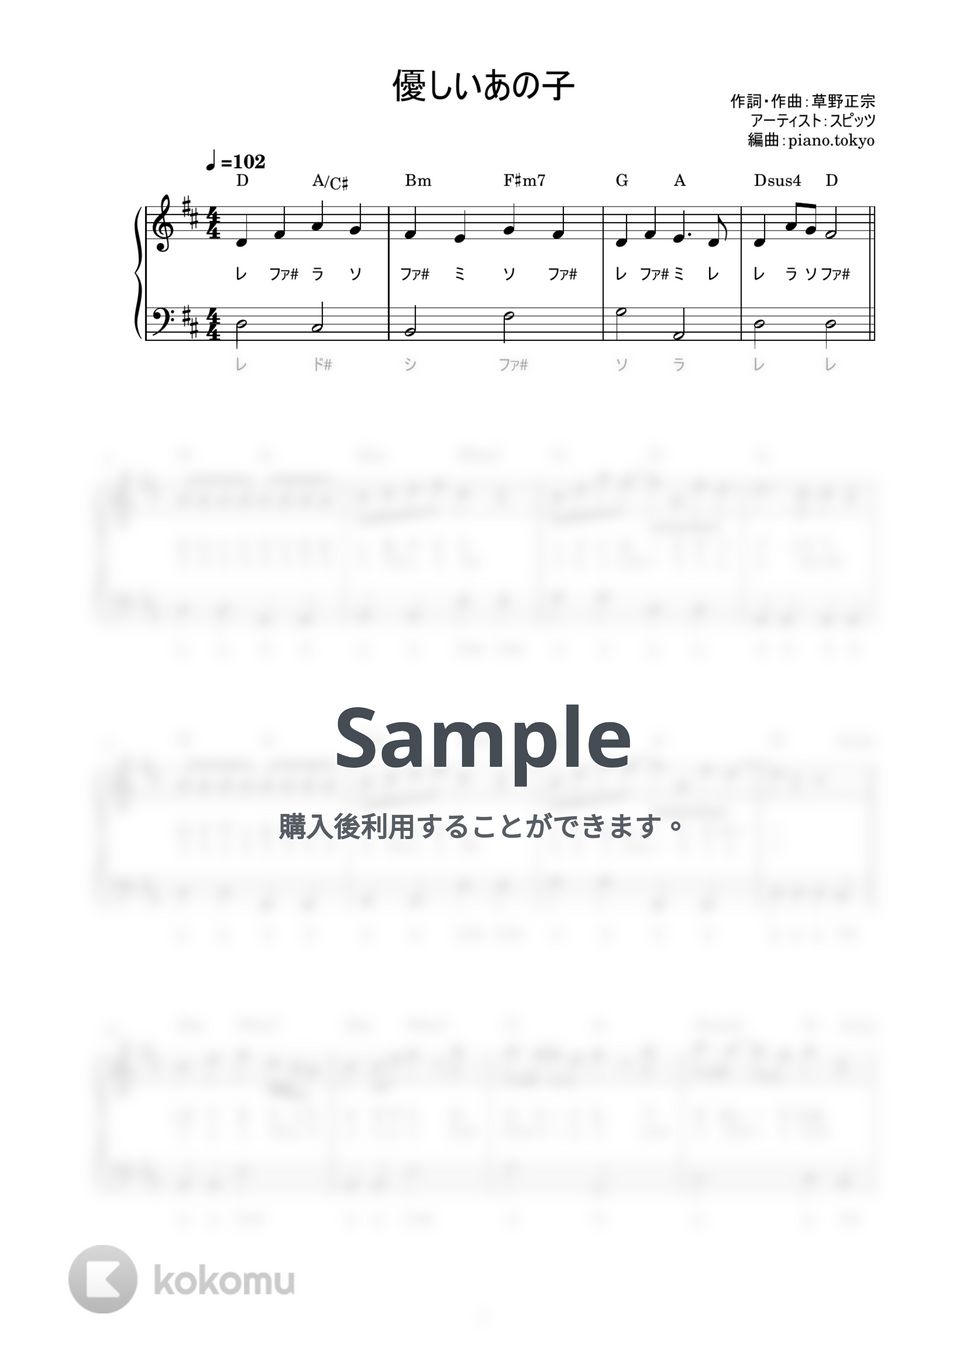 スピッツ - 優しいあの子 (かんたん / 歌詞付き / ドレミ付き / 初心者) by piano.tokyo